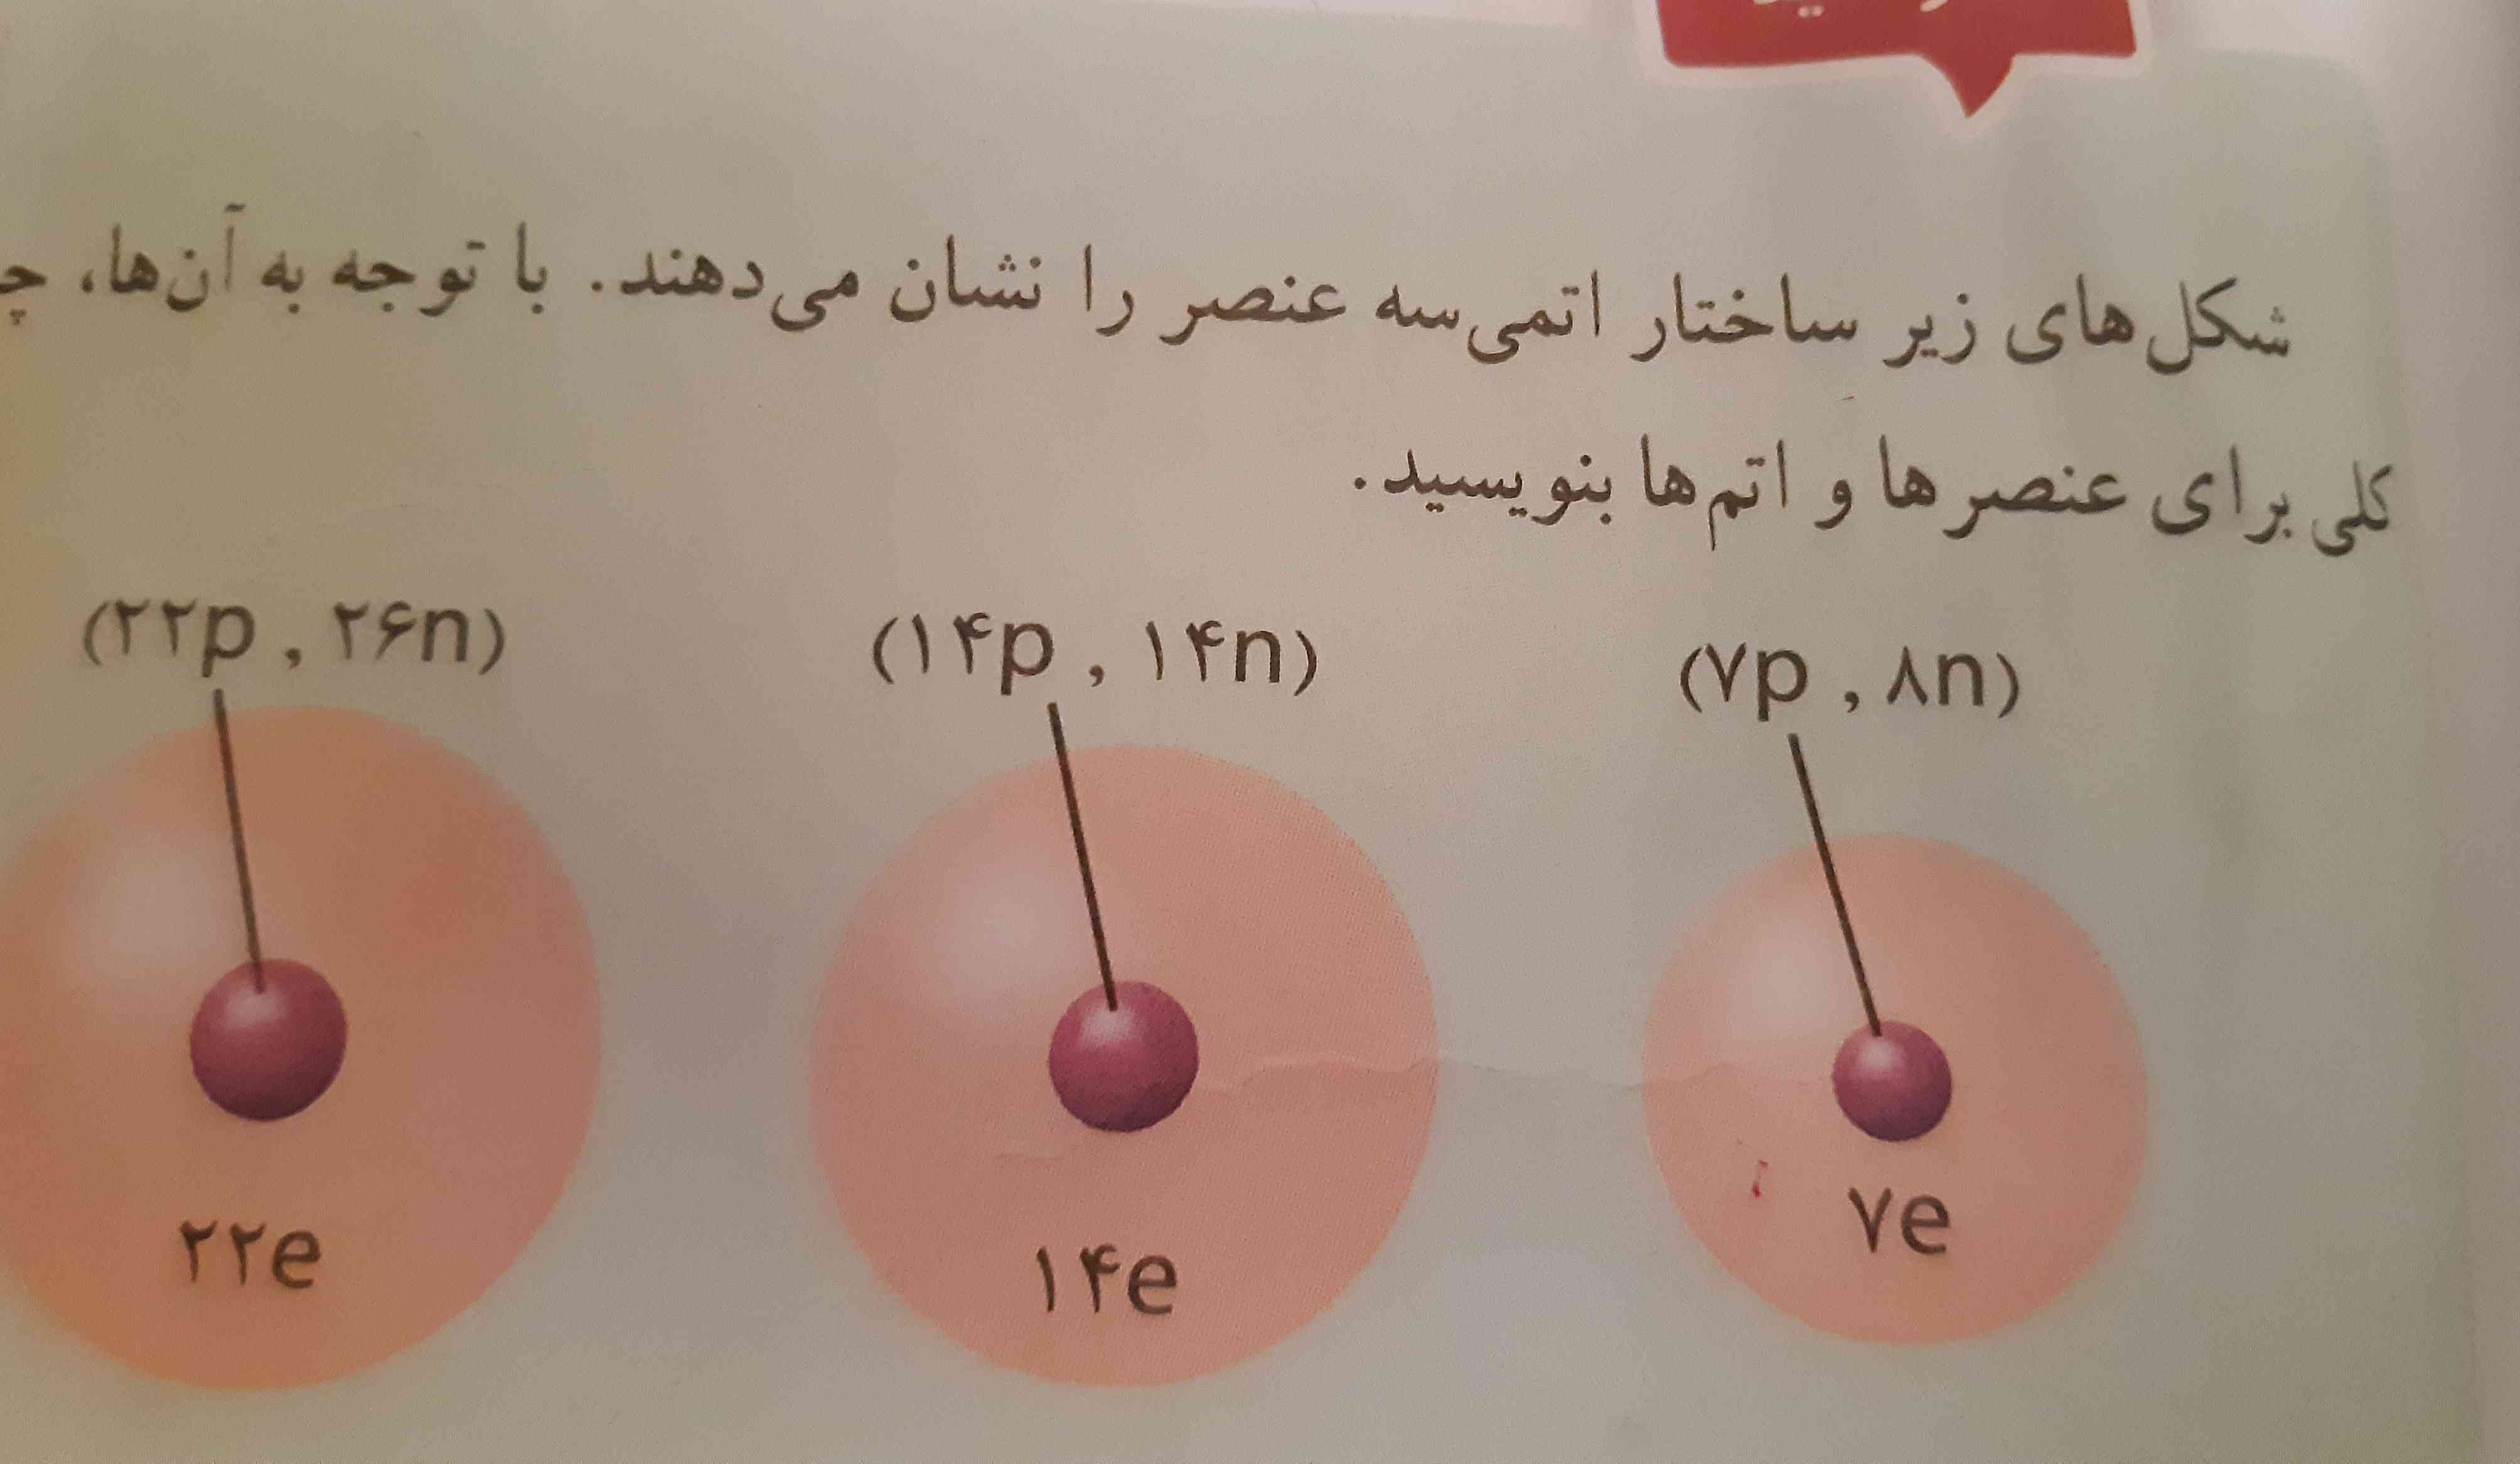 لطفادر این عکس  این سه هسته را توضیح بدید پروتون نوترون چند تاست ؟ 